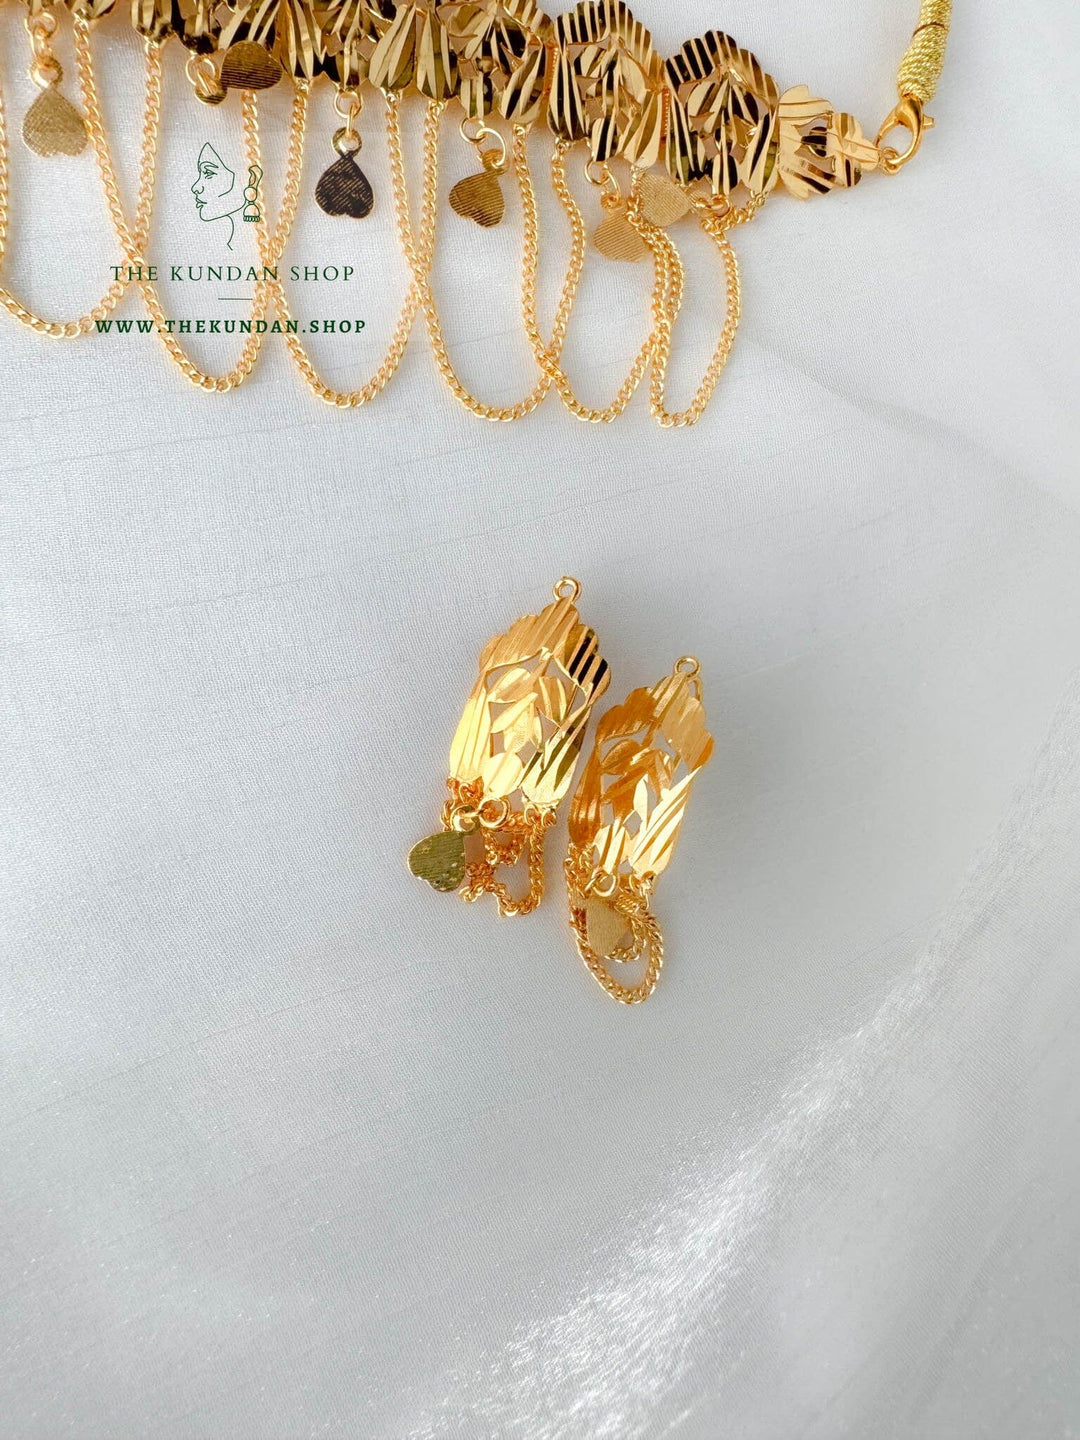 Golden Chain Drops Necklace Sets THE KUNDAN SHOP 